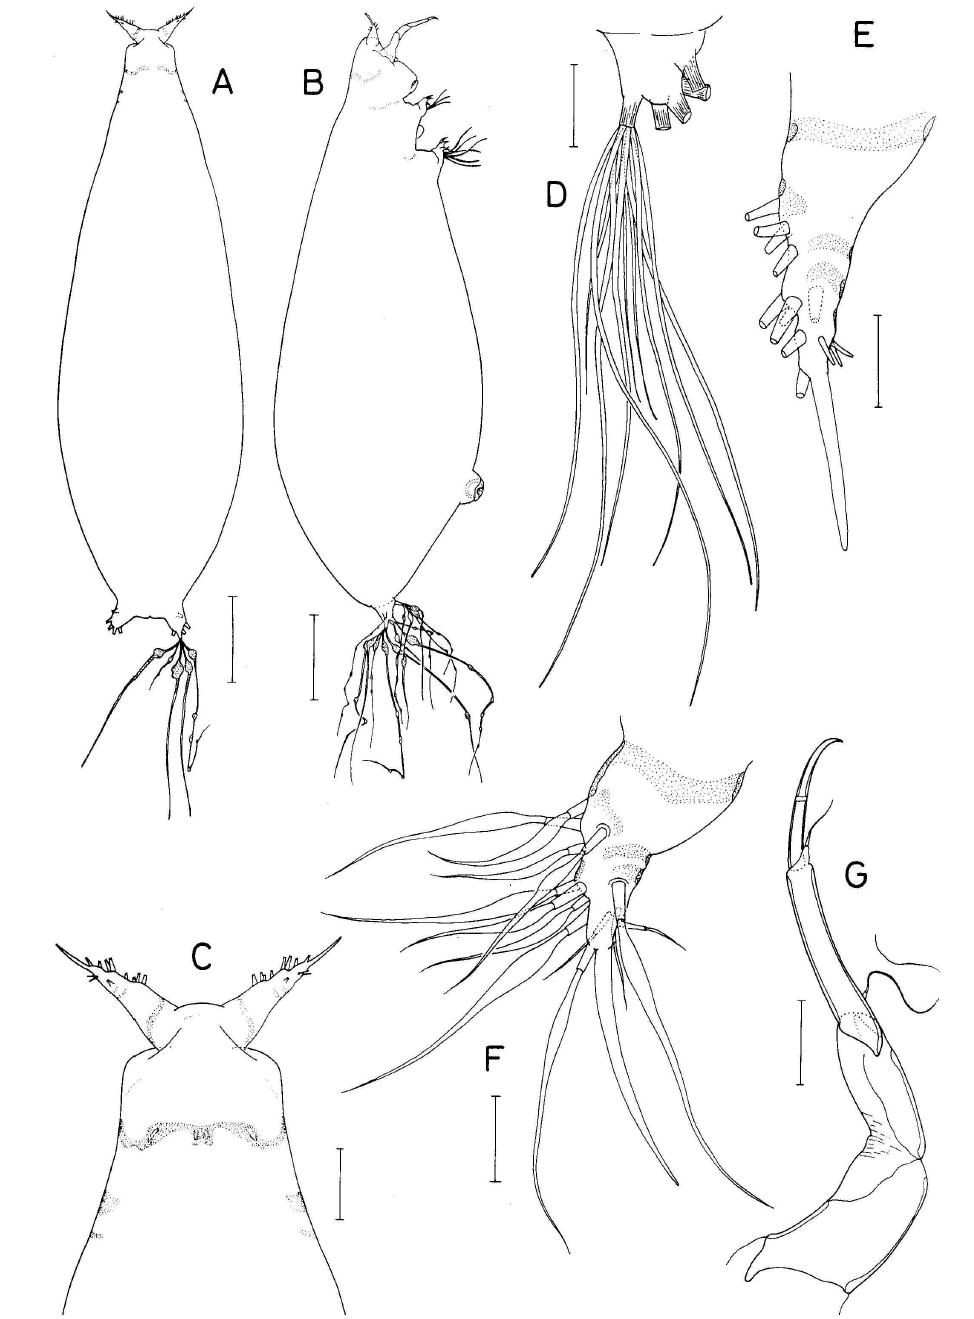 Lamippula n. sp., female